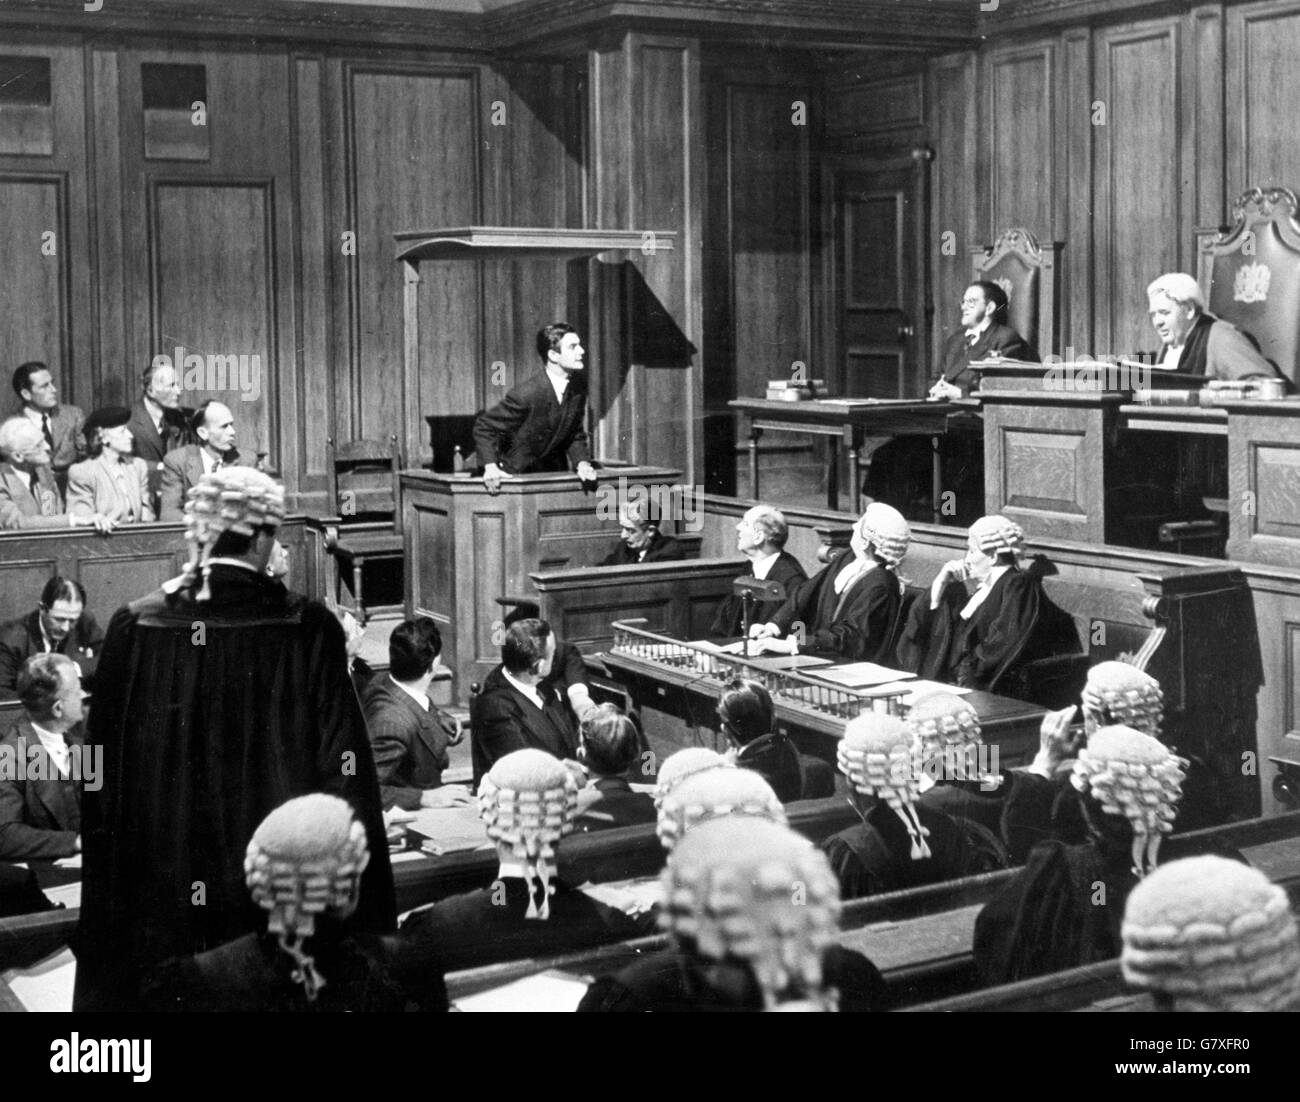 Film - 'The Paradise Case' - Charles Laughton. Scena della sala di corte del 'caso Paradine', con Charles Laughton e Louis Jourdan. Foto Stock